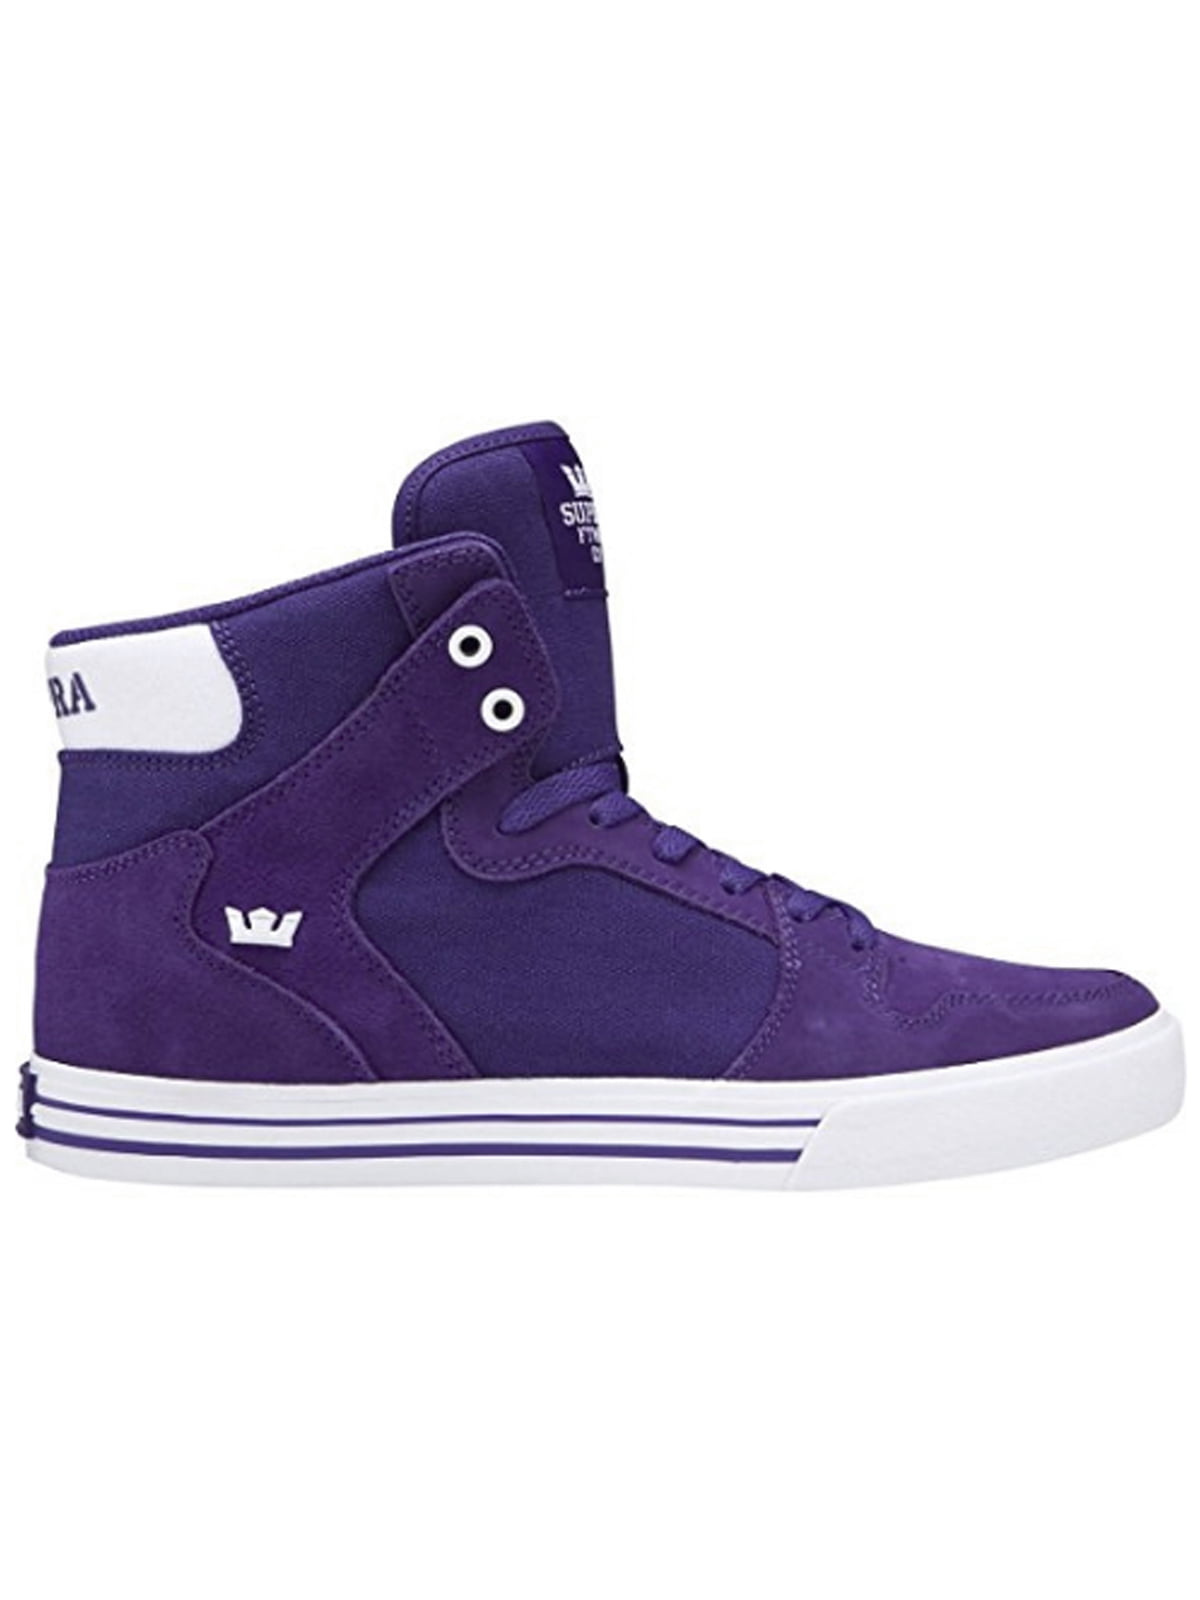 Supra Vaider Men's Suede Hi Top Fashion Sneakers Athletic Shoes Purple ...